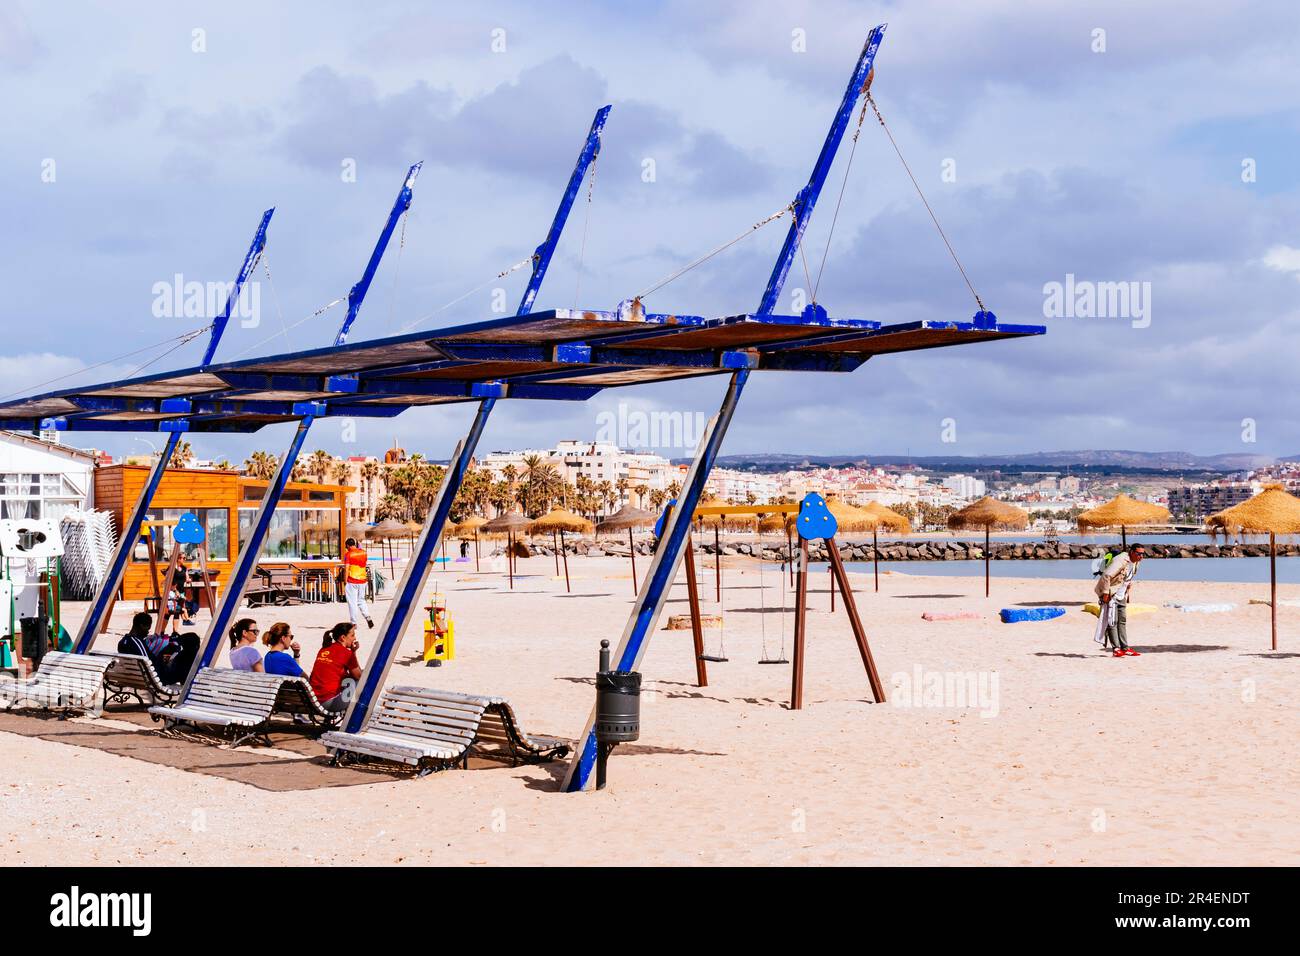 Servizi sulla spiaggia. Spiaggia la Hípica. Spiaggia Bandiera Blu. L'iconica Bandiera Blu è uno dei premi volontari più riconosciuti al mondo per le spiagge. Io Foto Stock